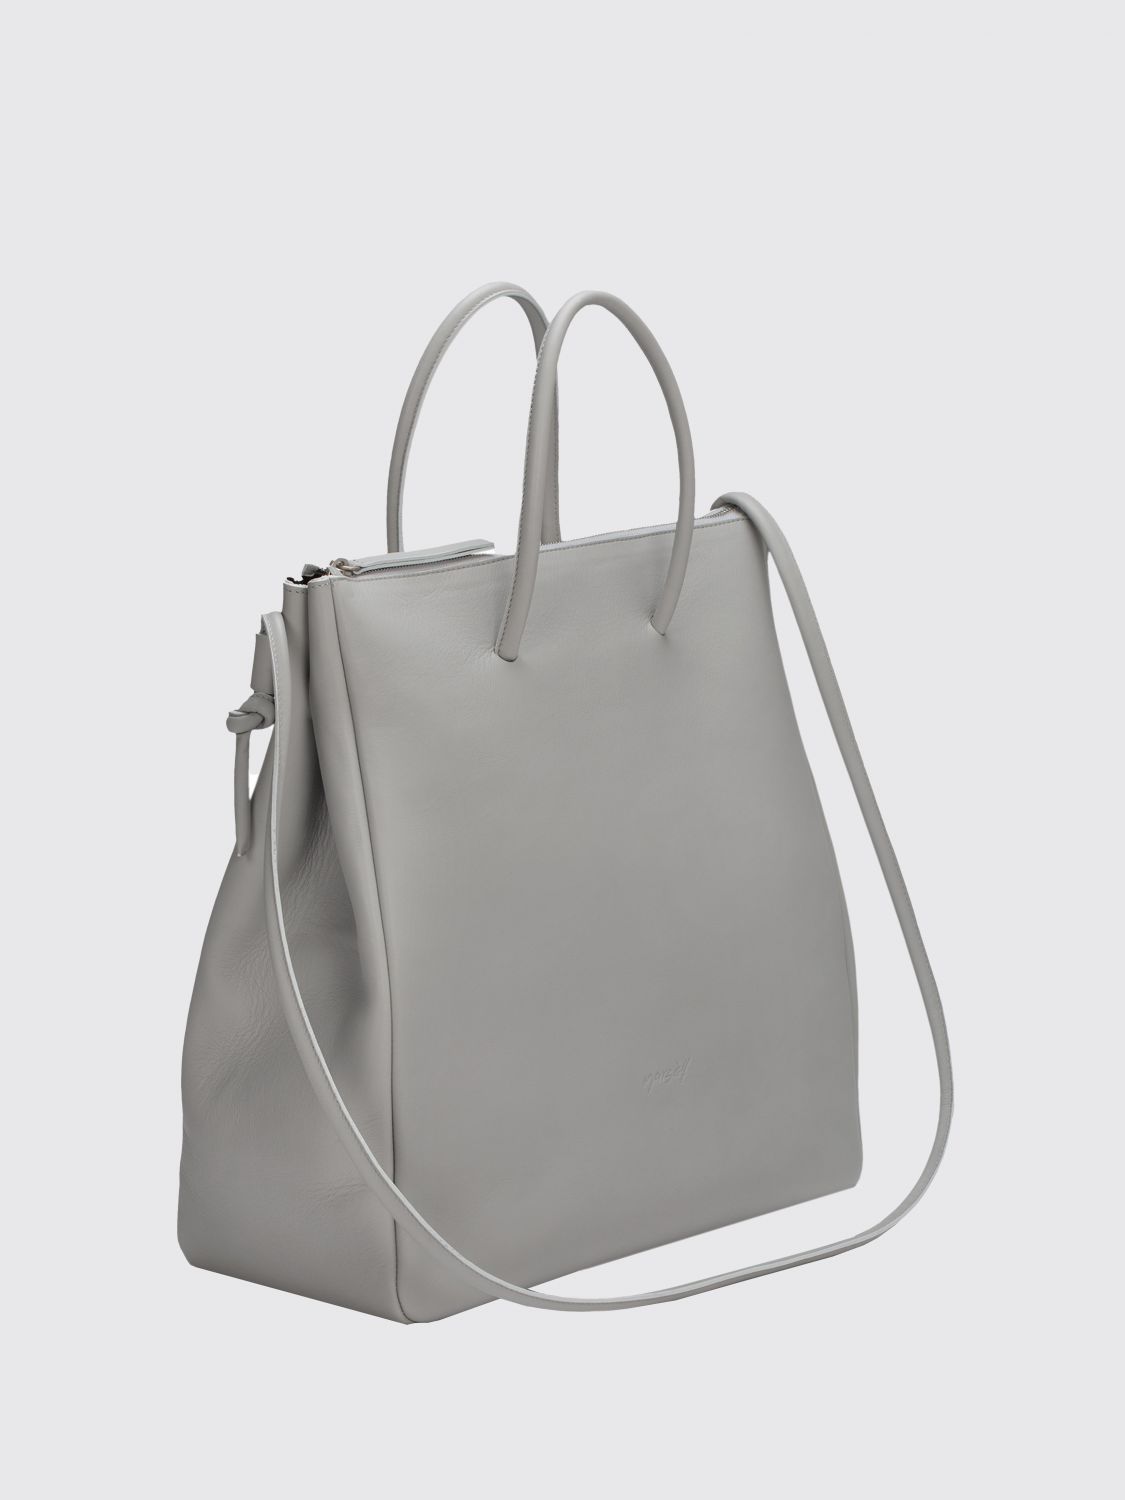 Color : Silver YUKILO Womens Grey Striped Tote Bag Wild Leather Shoulder Crossbody Handbag